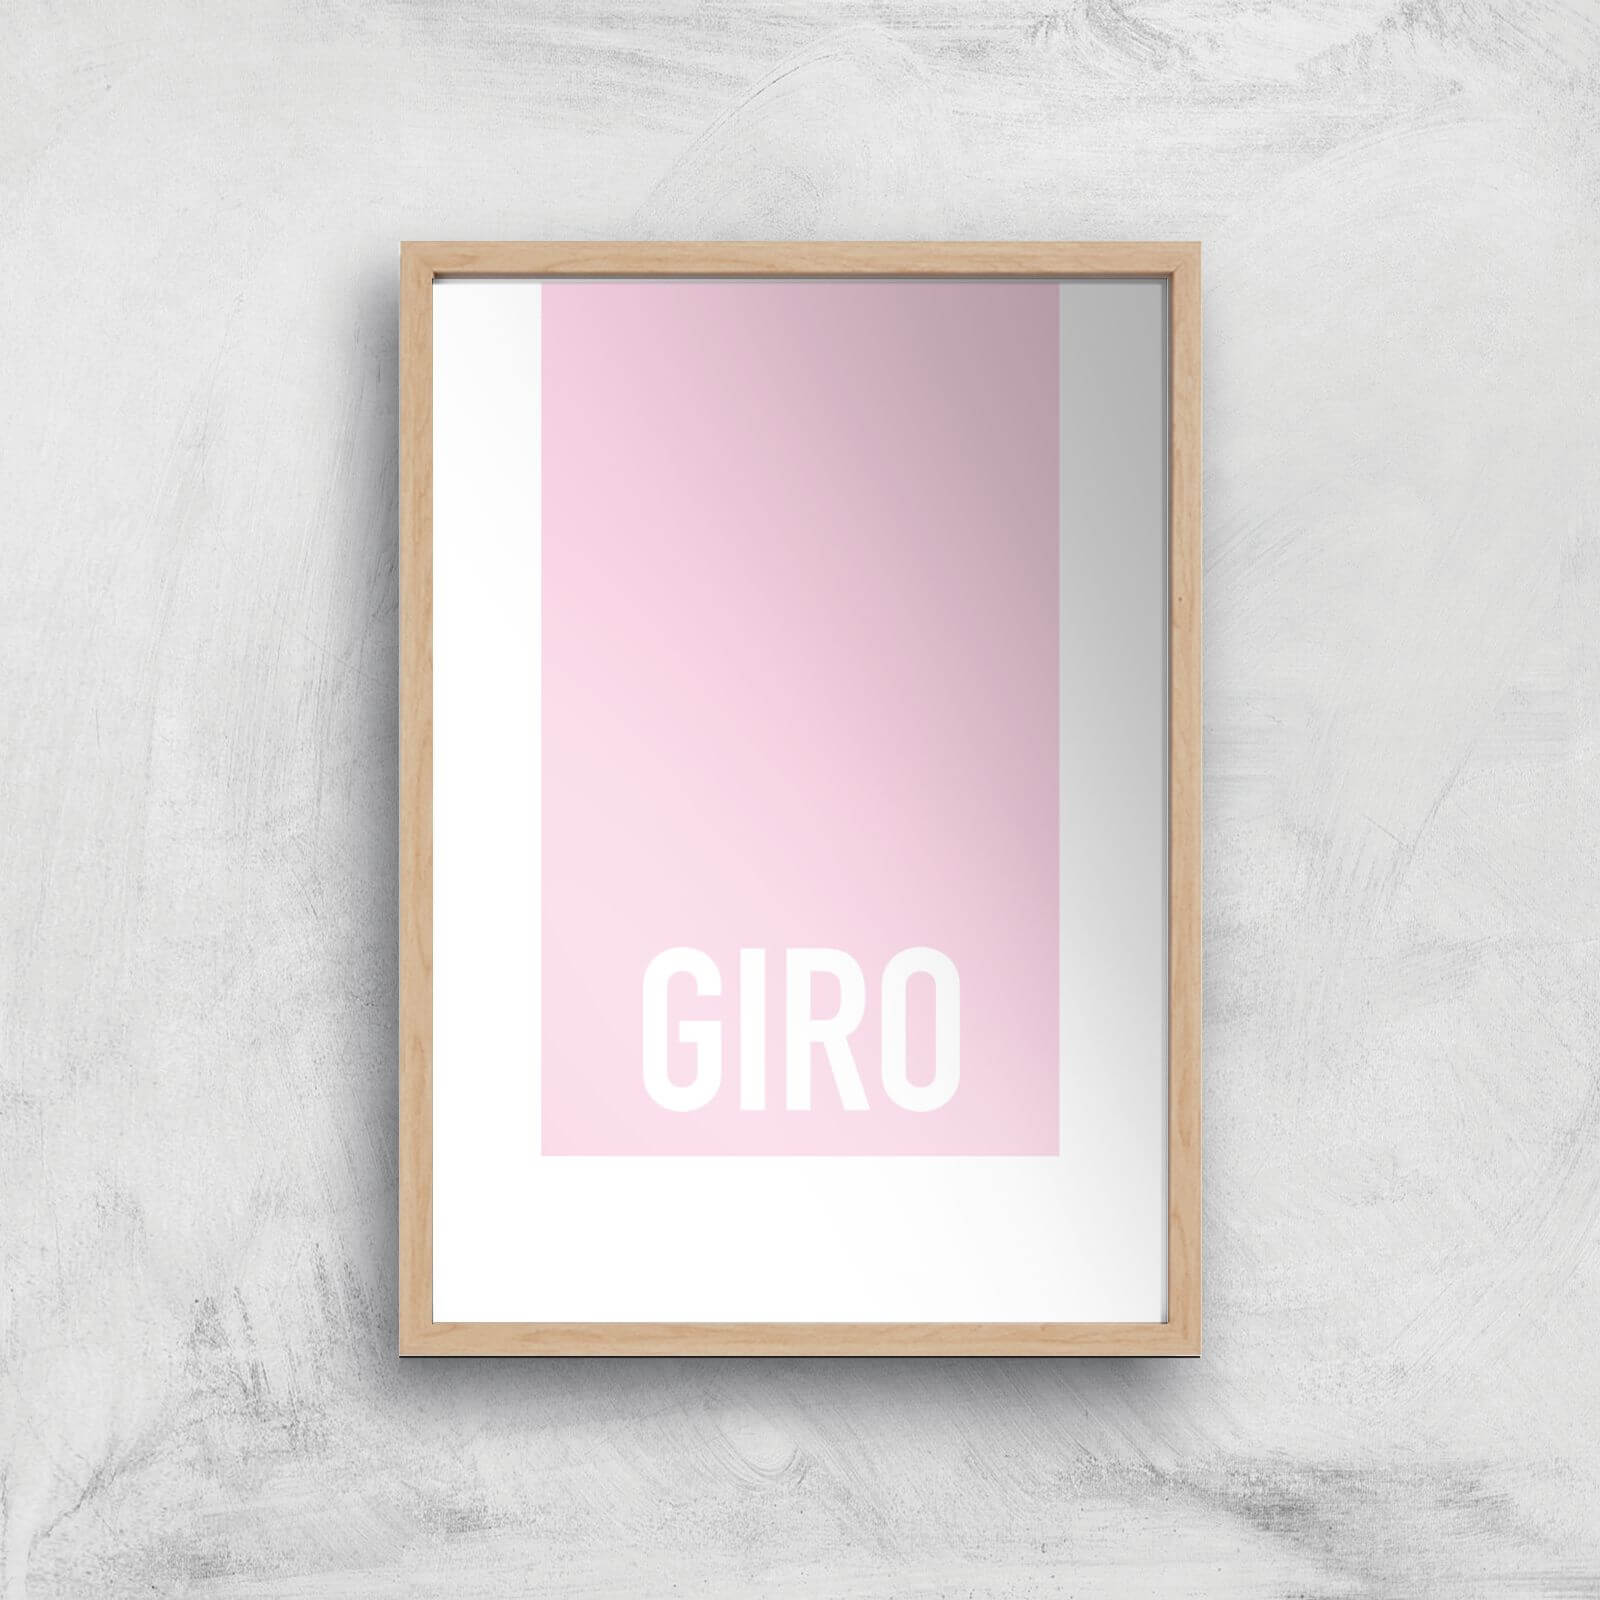 PBK Giro Giclee Art Print - A4 - Wooden Frame